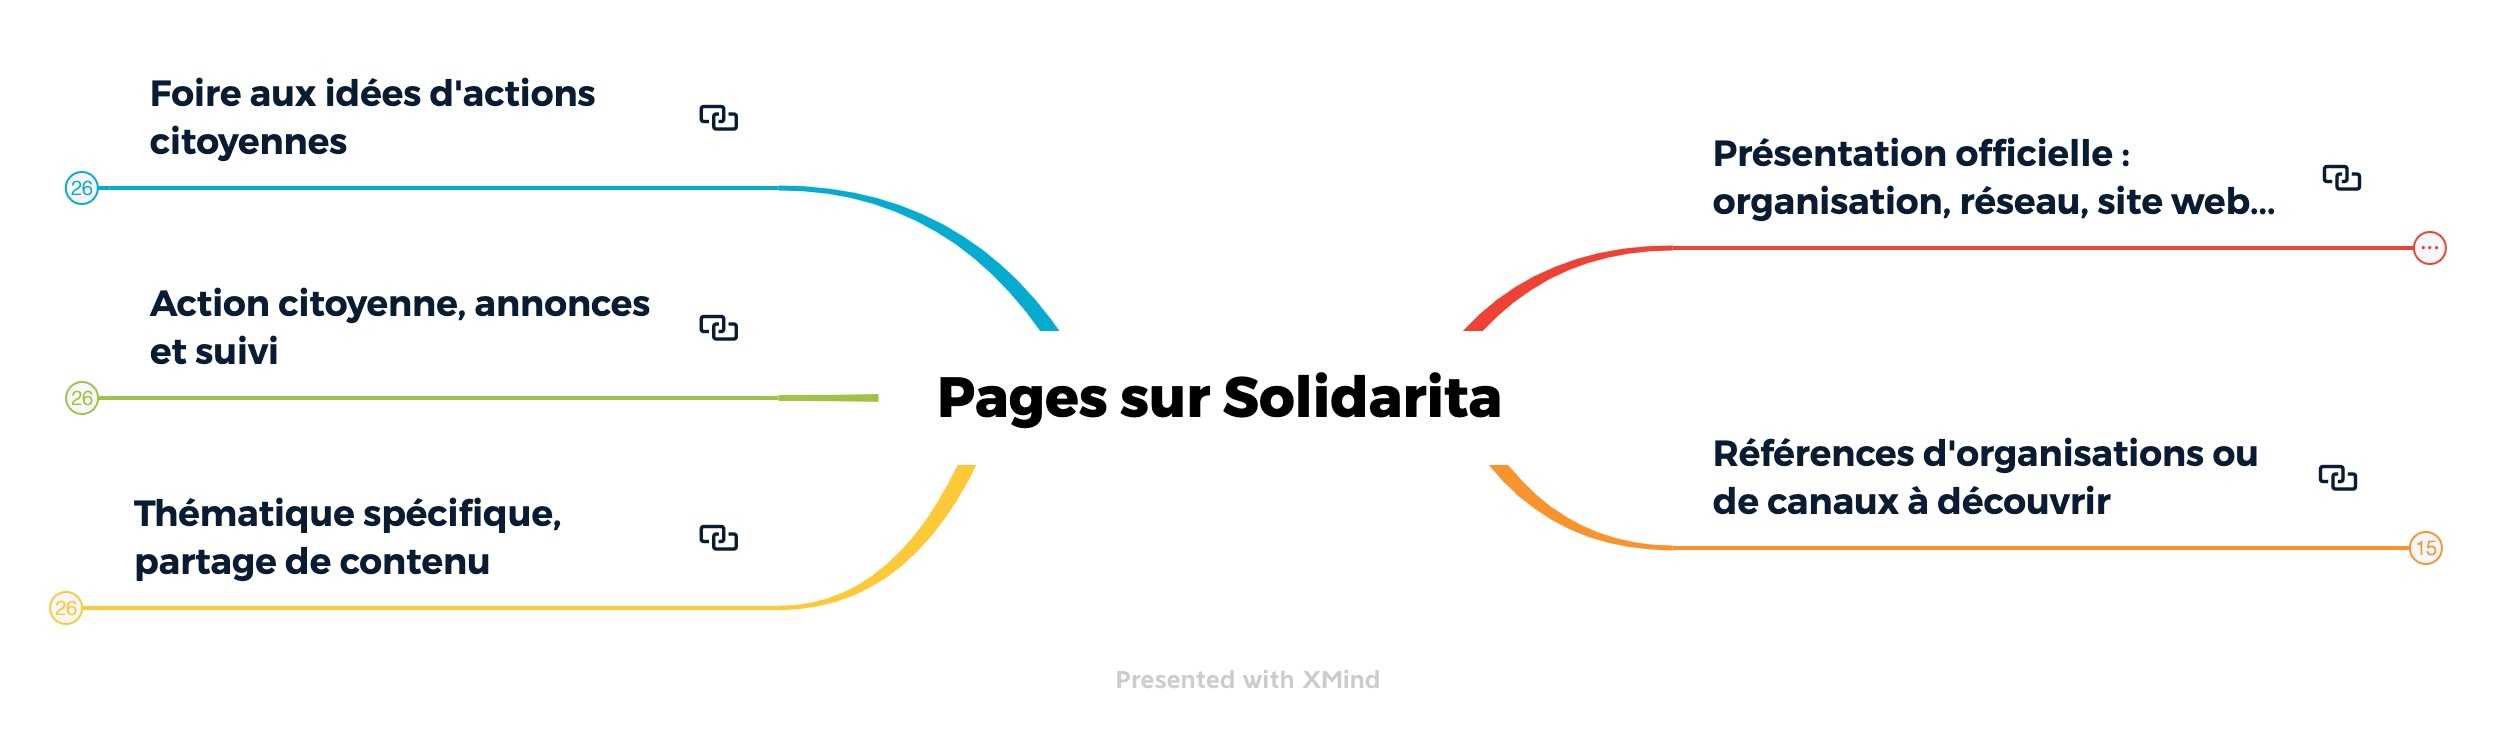 Thèmes centraux des Pages Solidarita